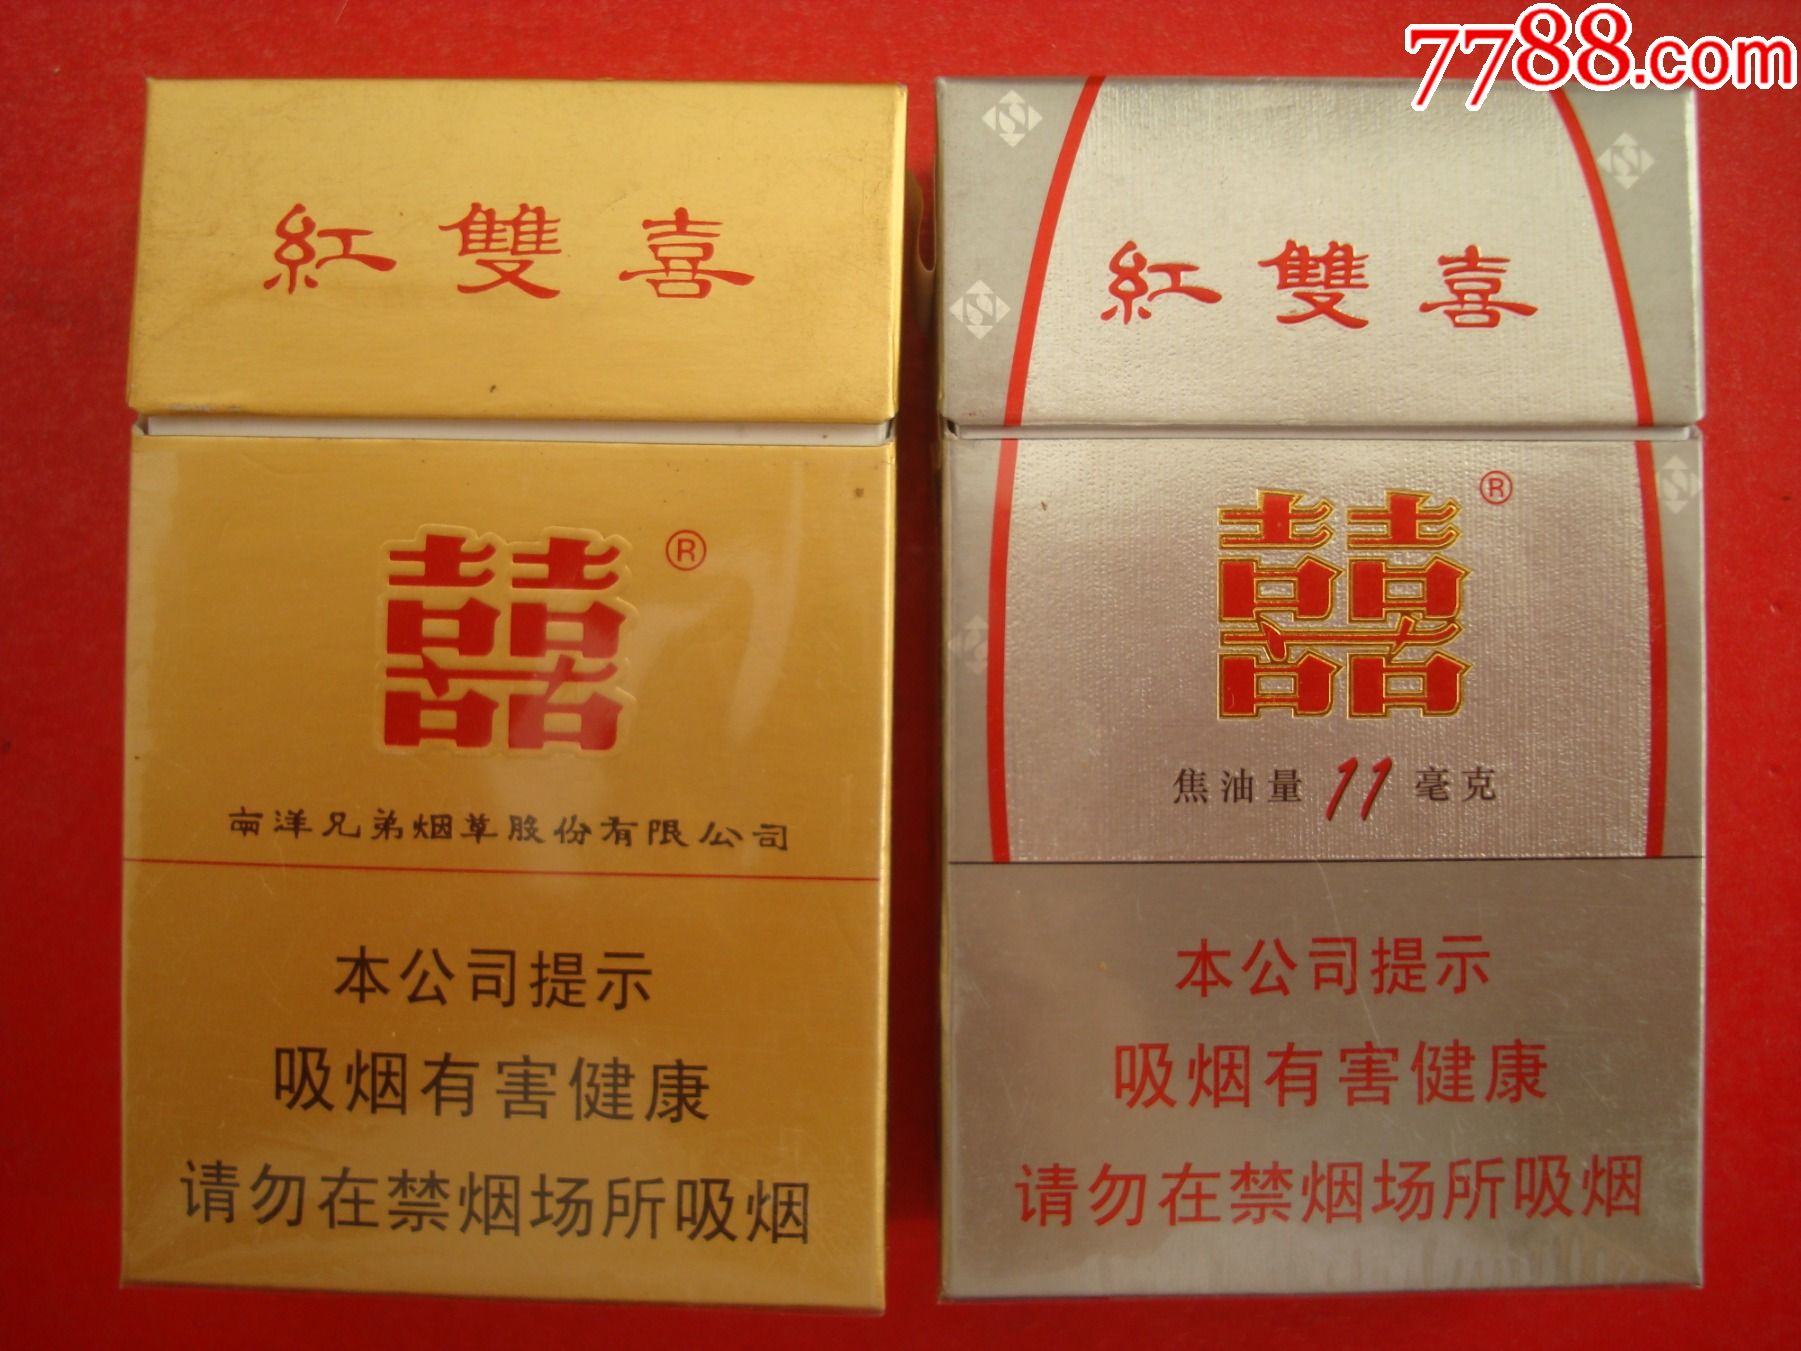 香港――红双喜――免税专卖――2枚不同合售